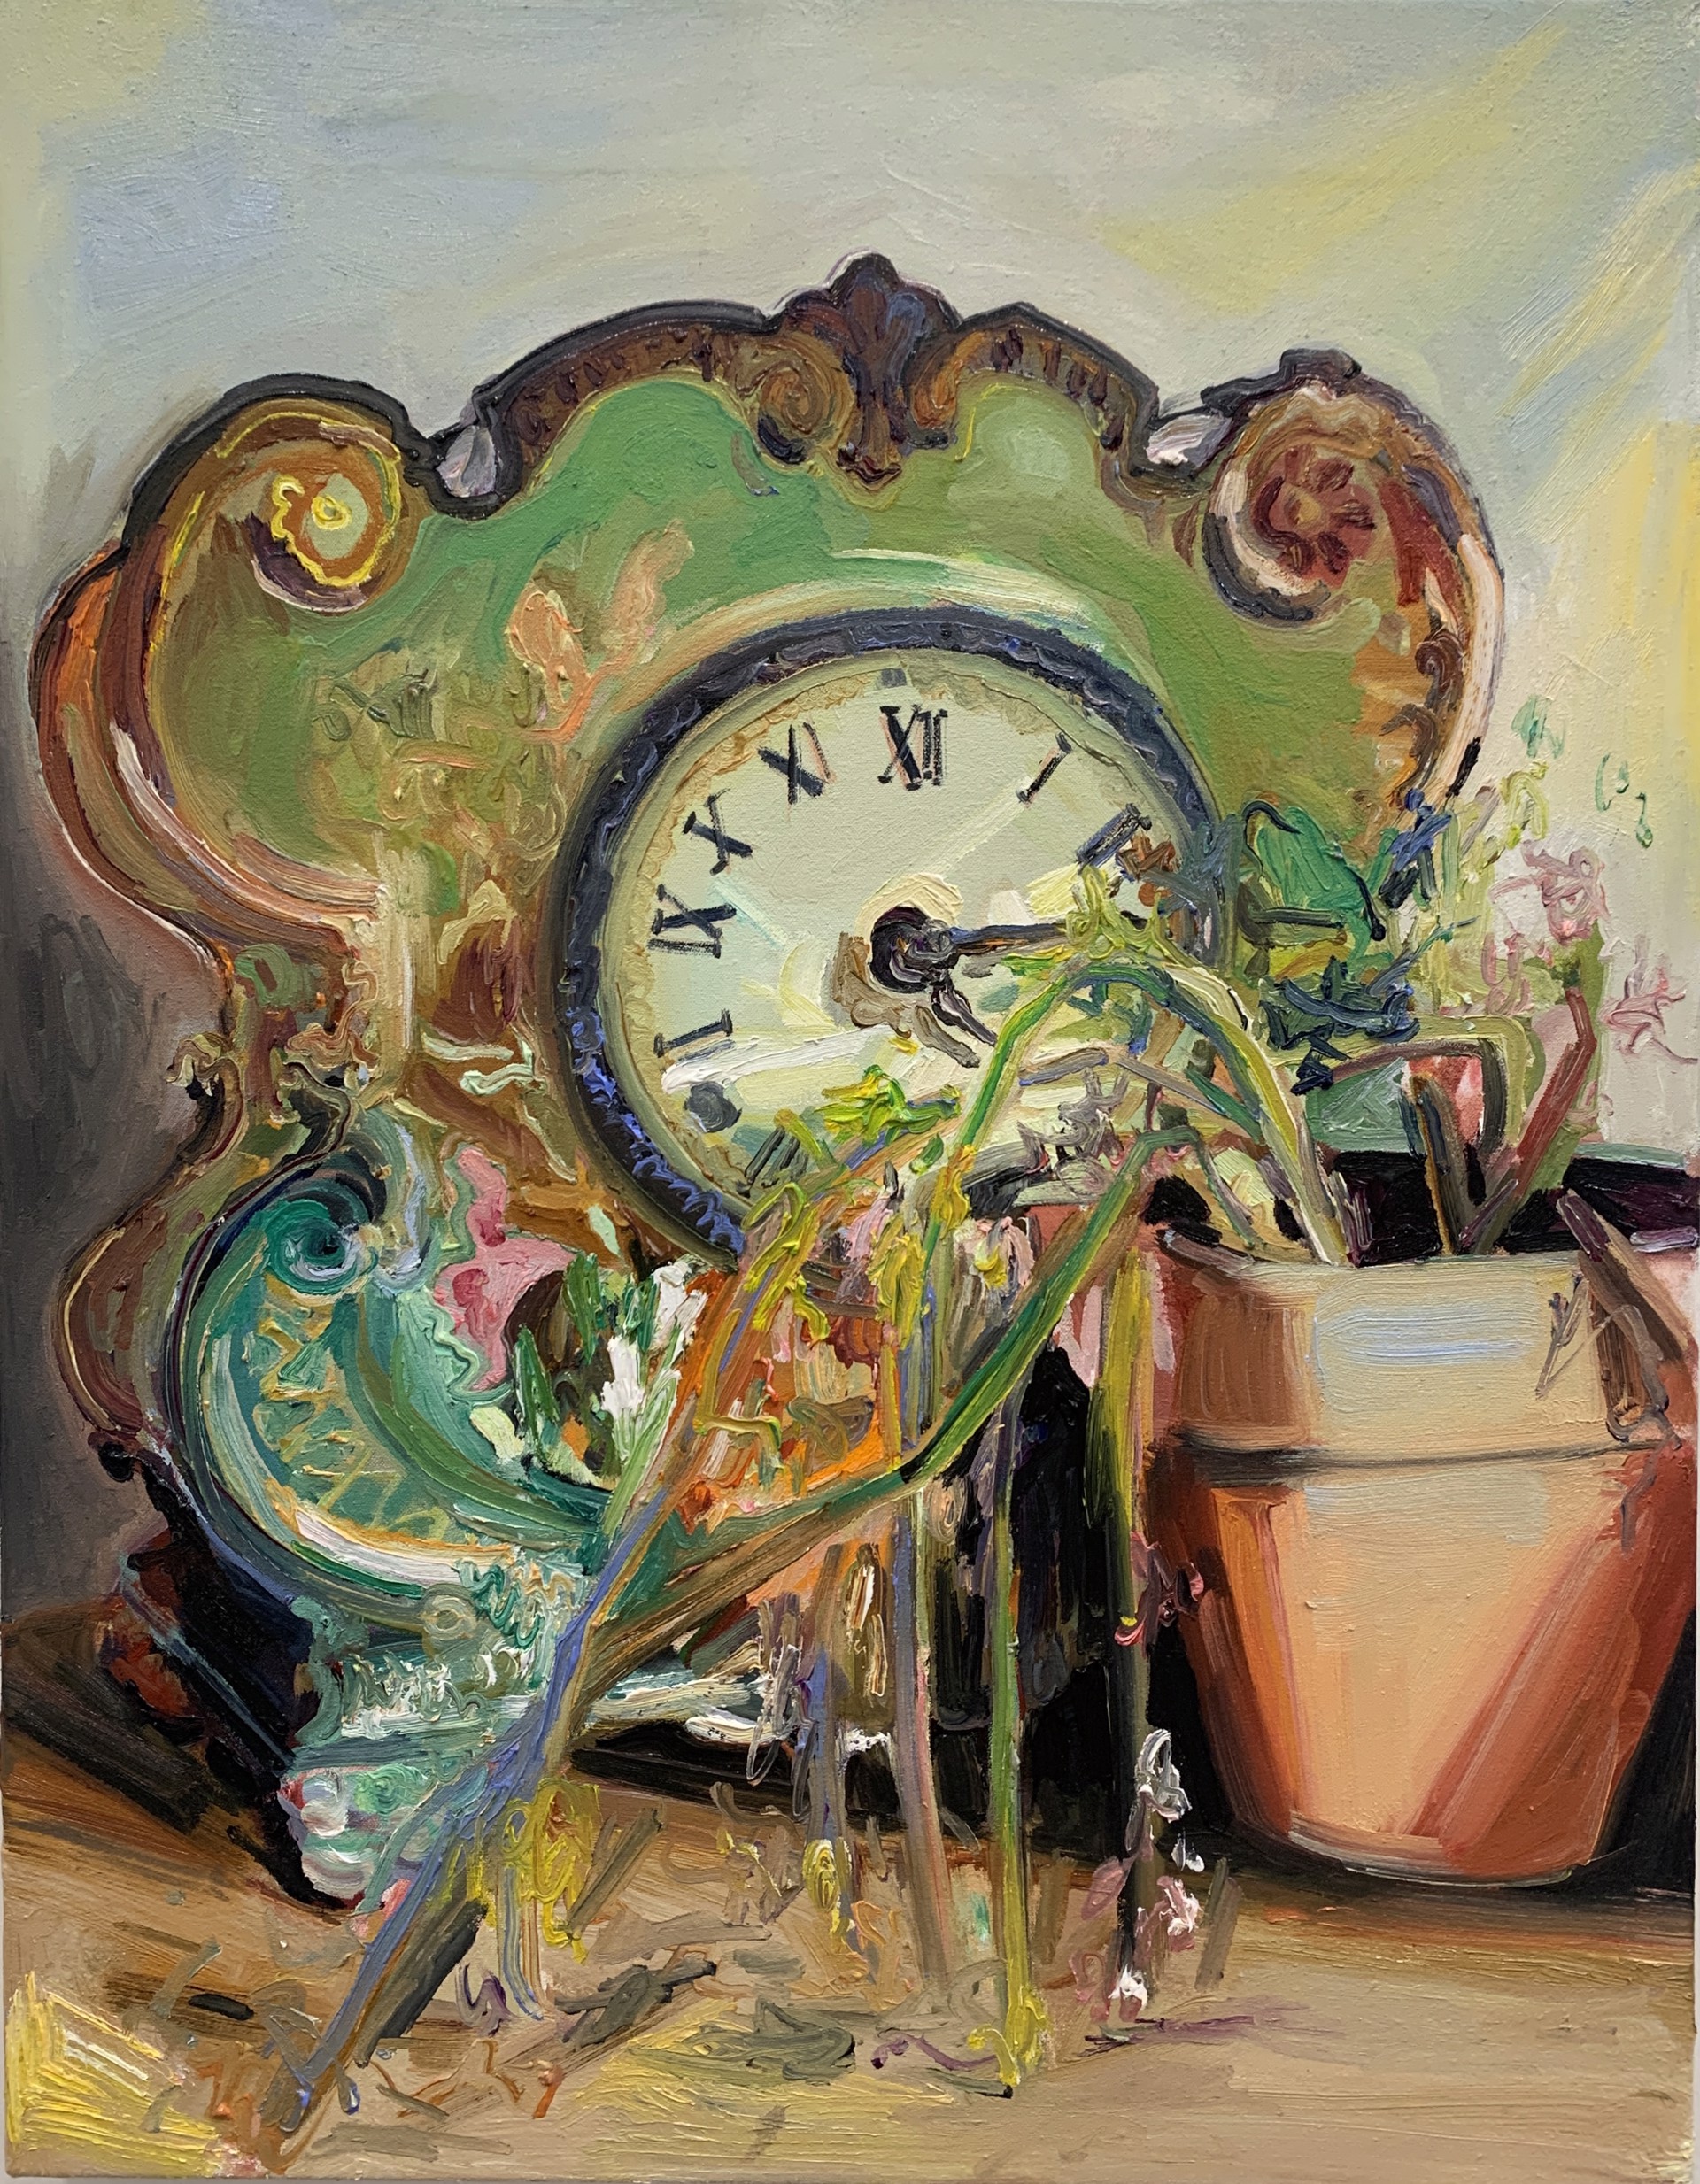 Grandma's clock by Kaitlyn Tucek